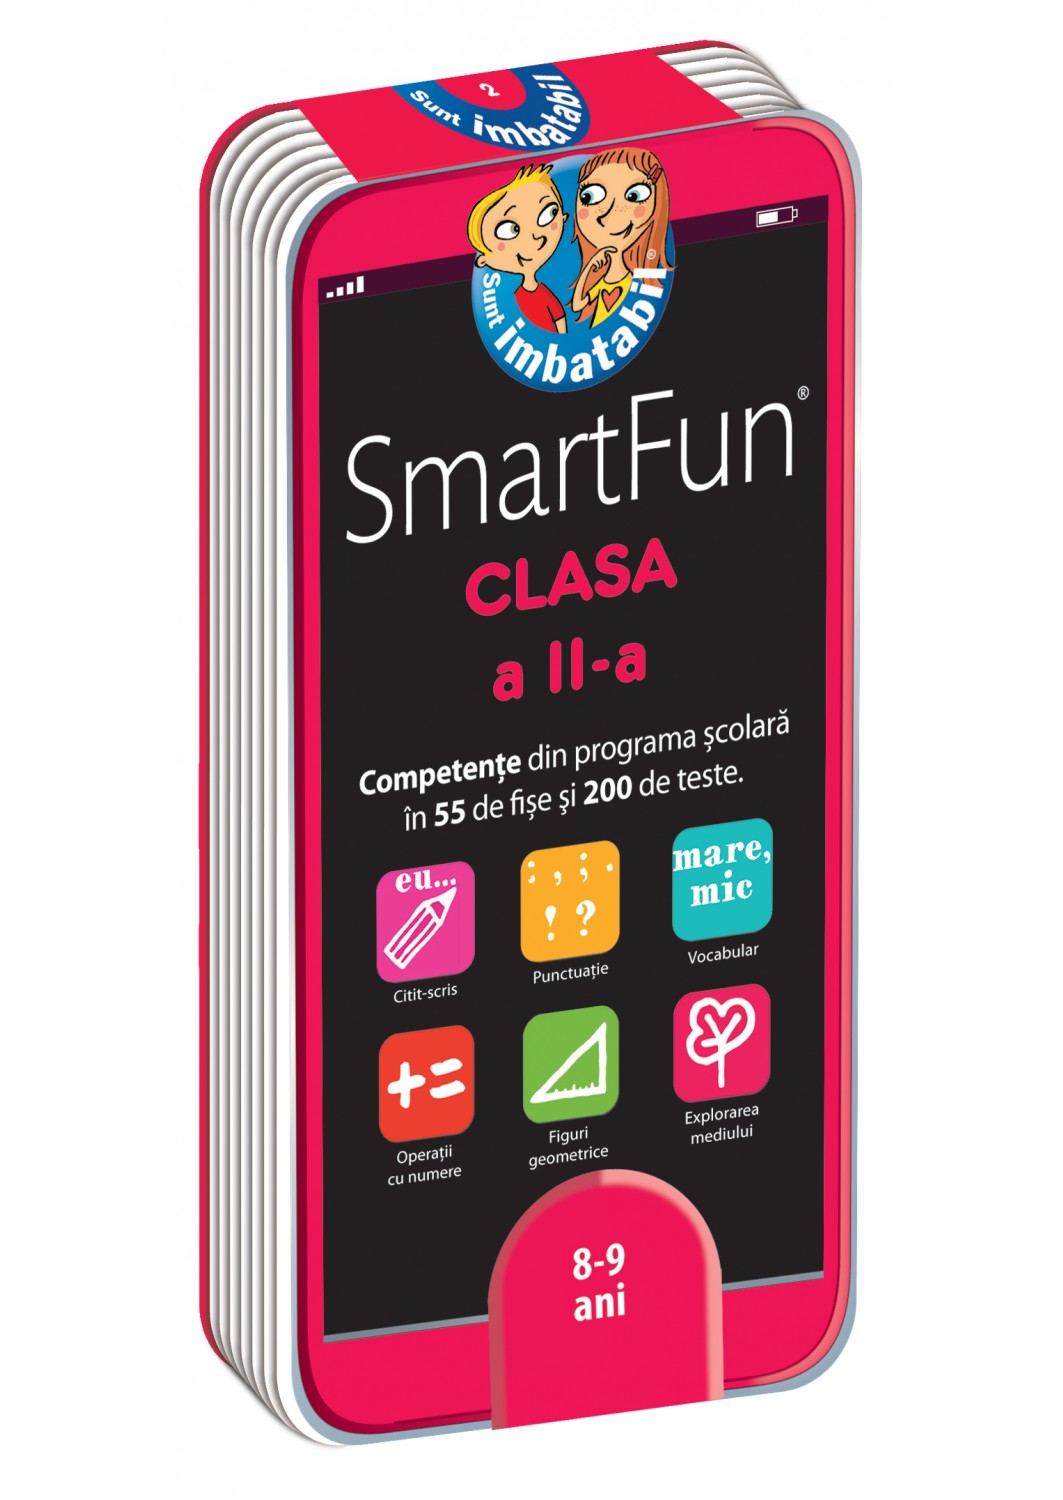 SmartFun. Clasa a II-a. Competențe din programa școlară în 55 de fișe și 200 de teste